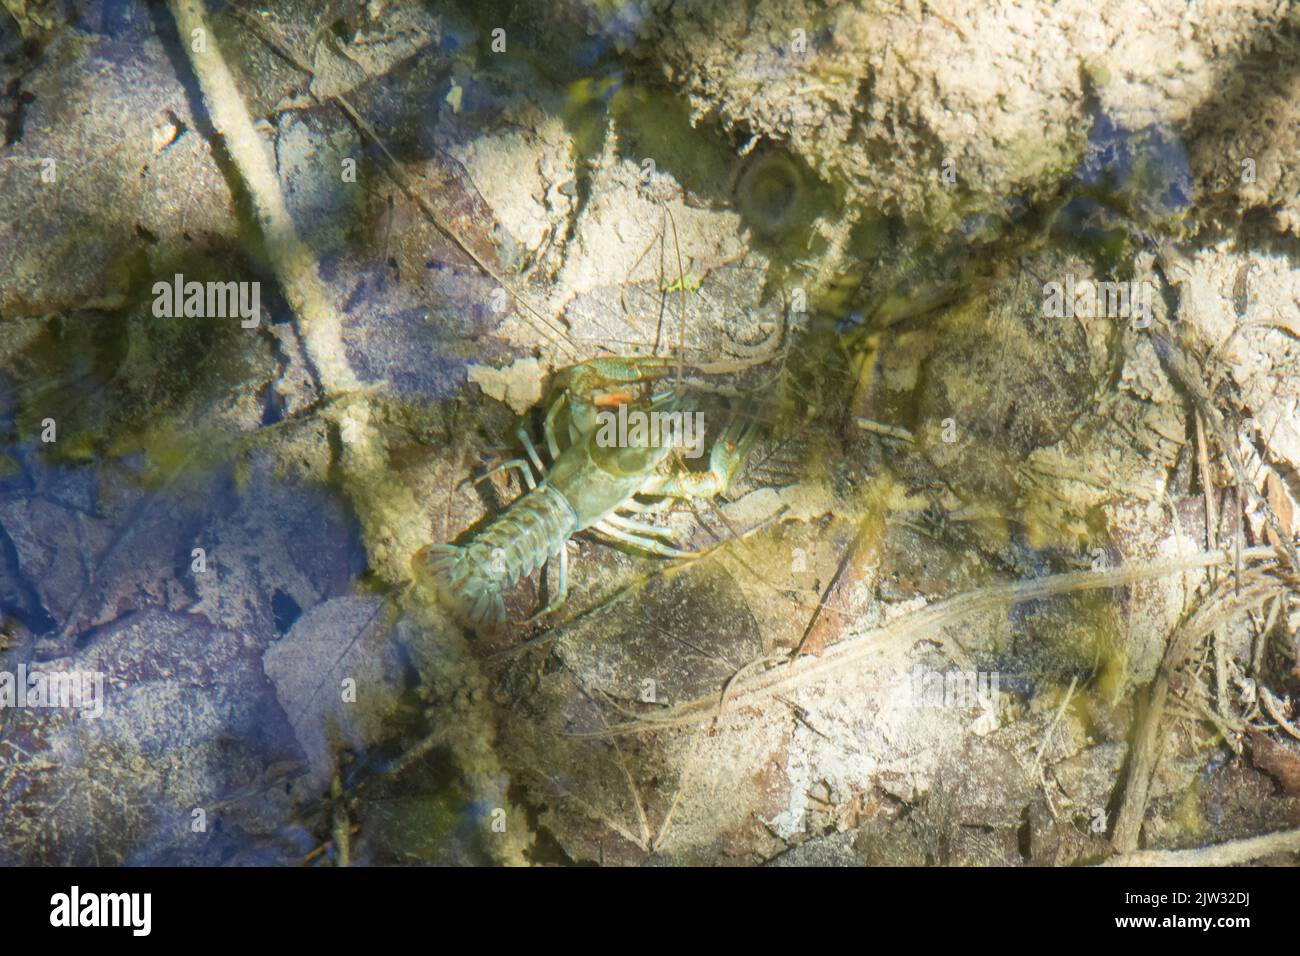 Ein europäischer Flusskrebse (Astacus astacus) im flachen, klaren Wasser eines Pools von oben gesehen. Nationalpark Plitvicer Seen, Coatia, Europa. Stockfoto